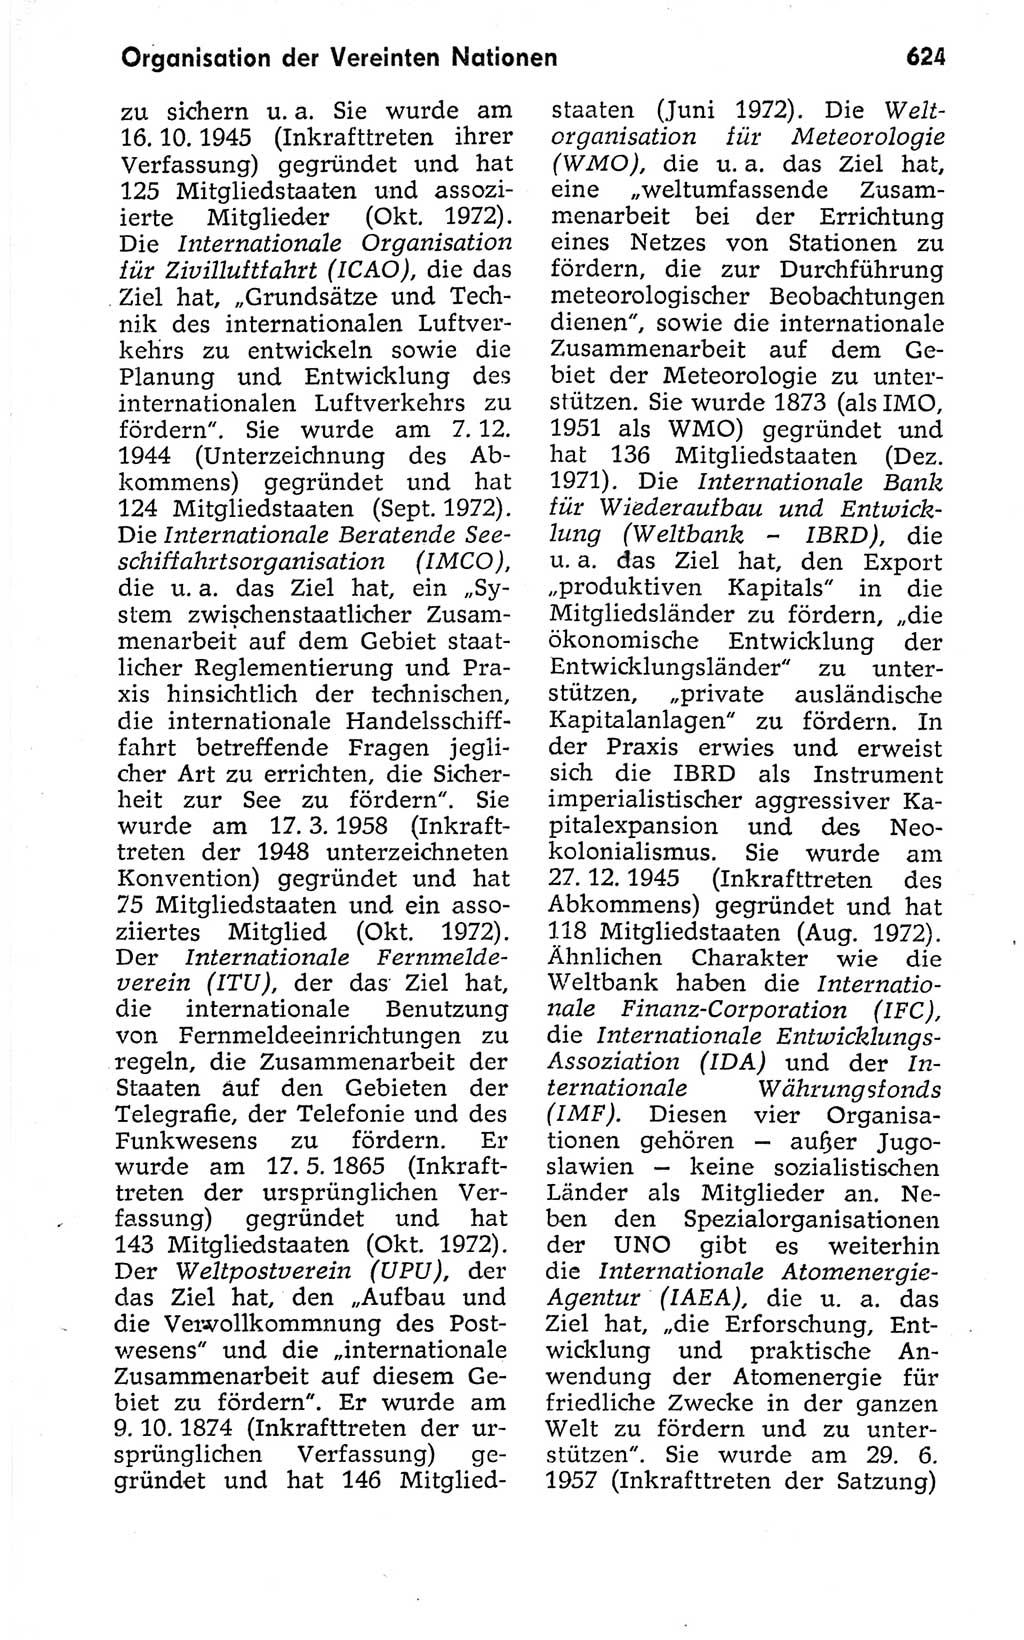 Kleines politisches Wörterbuch [Deutsche Demokratische Republik (DDR)] 1973, Seite 624 (Kl. pol. Wb. DDR 1973, S. 624)